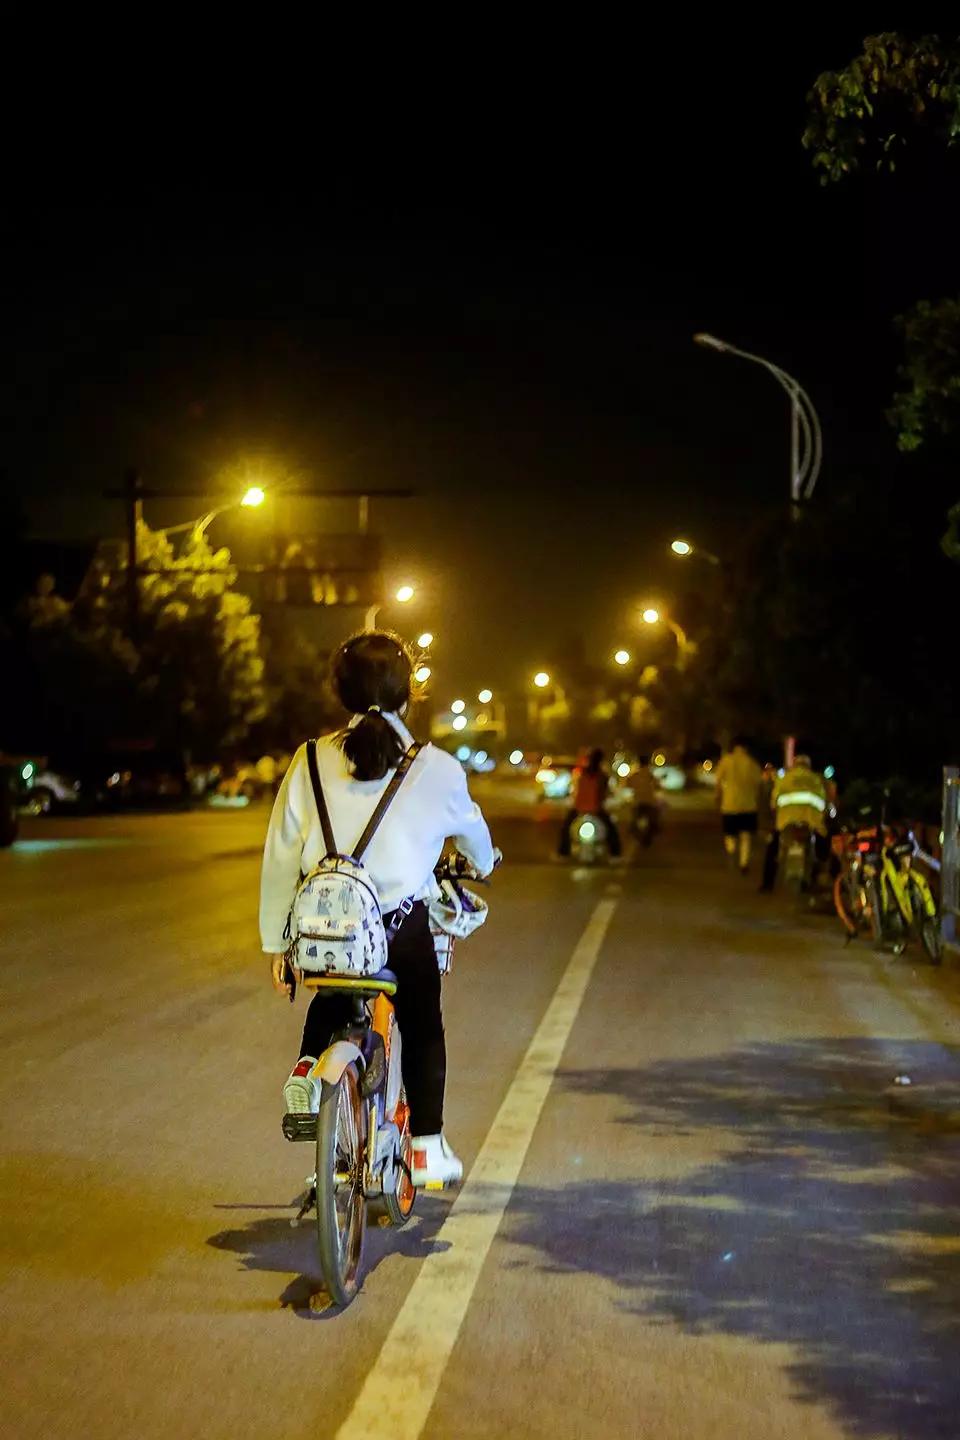 我在凌晨的杭州街头拍了6小时看到了人生百态